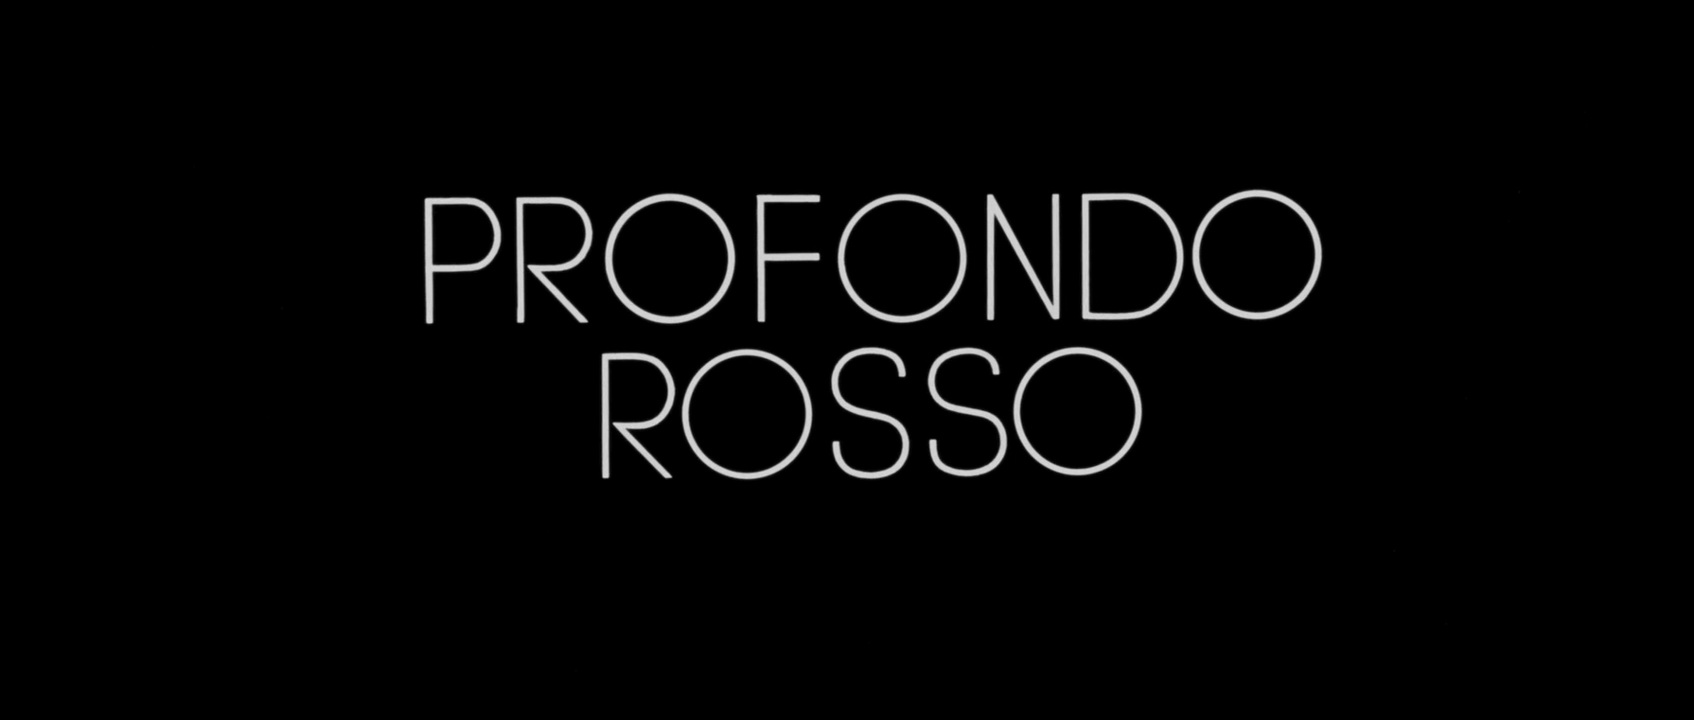 Profondo rosso (1975) title.jpg